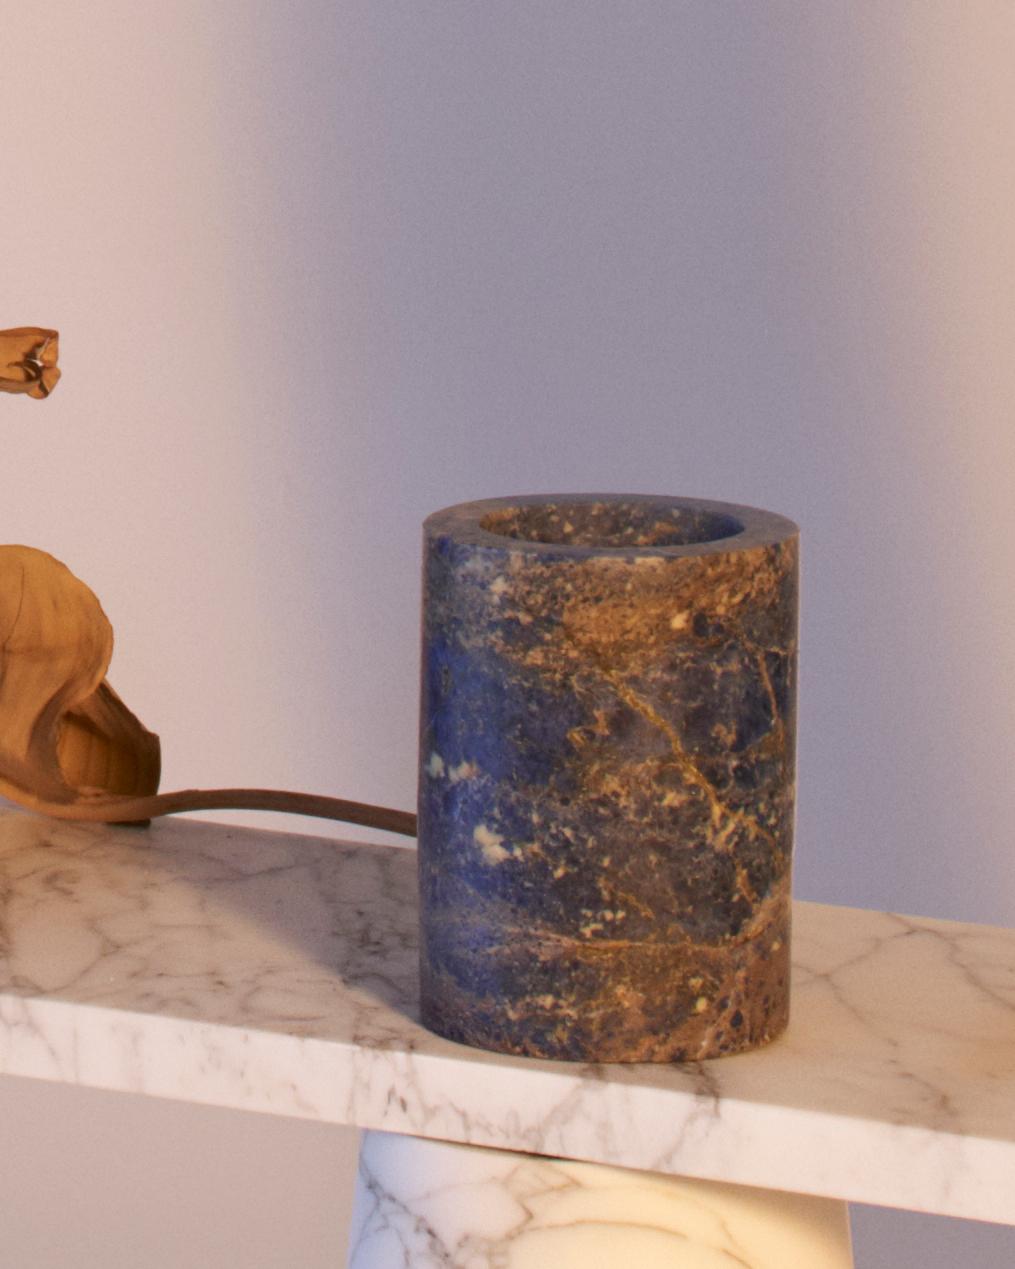 Vase à fleurs en marbre Sodalite bleu, conçu par Karen Chekerdjian, fabriqué en Italie
Également disponible avec les marbres Red Levanto et Black Marquinia
Cet article fait partie des accessoires de la Collectional Inside Out.  - vases, tables,